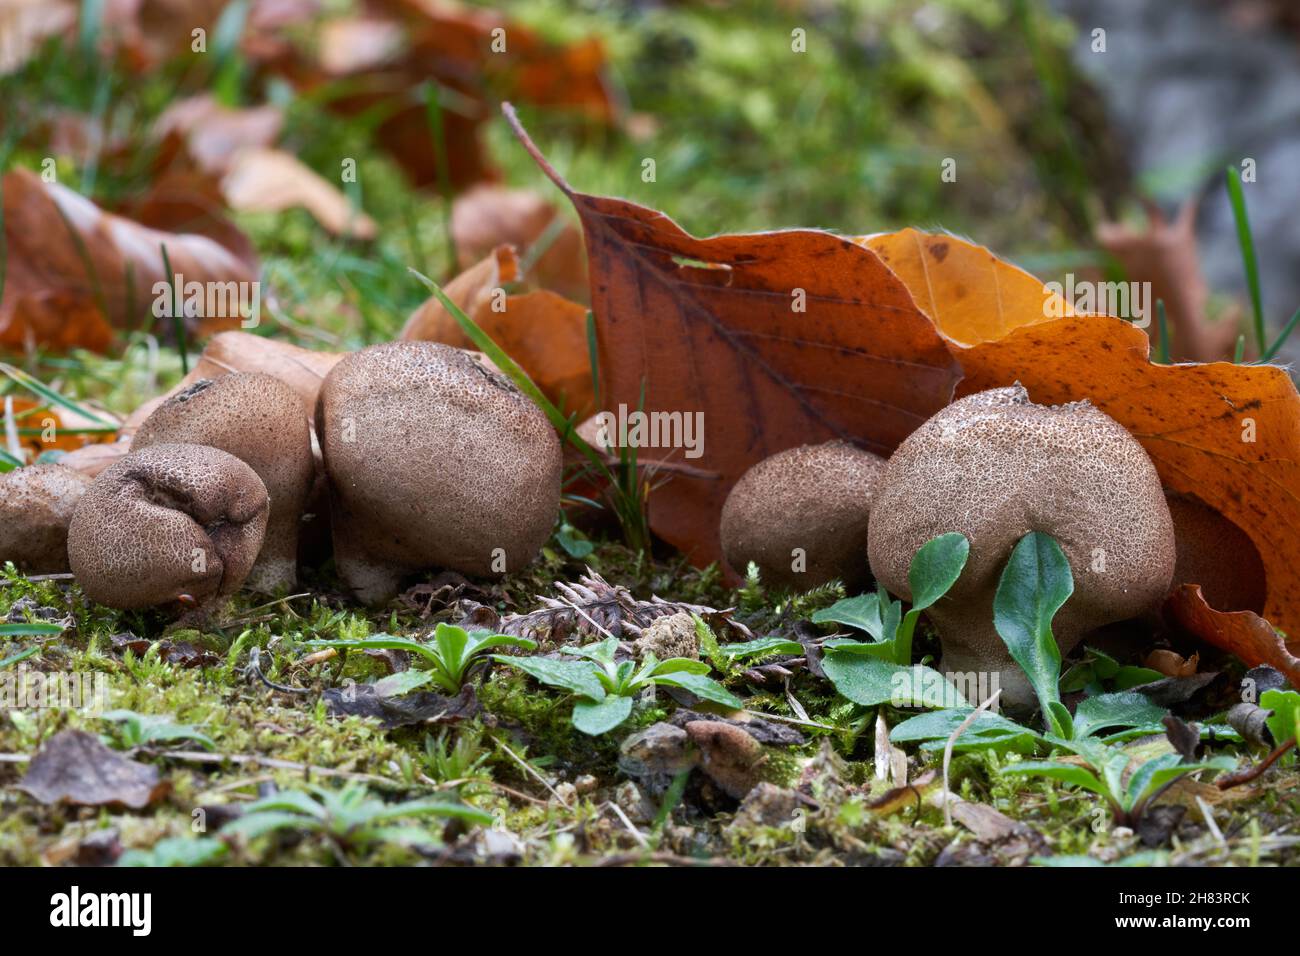 Essbarer Pilz Lycoperdon pyriforme im Fichtenwald. Bekannt als birnenförmiger Puffball oder stumpf Puffball. Alte Wildpilze wachsen im Gras. Stockfoto